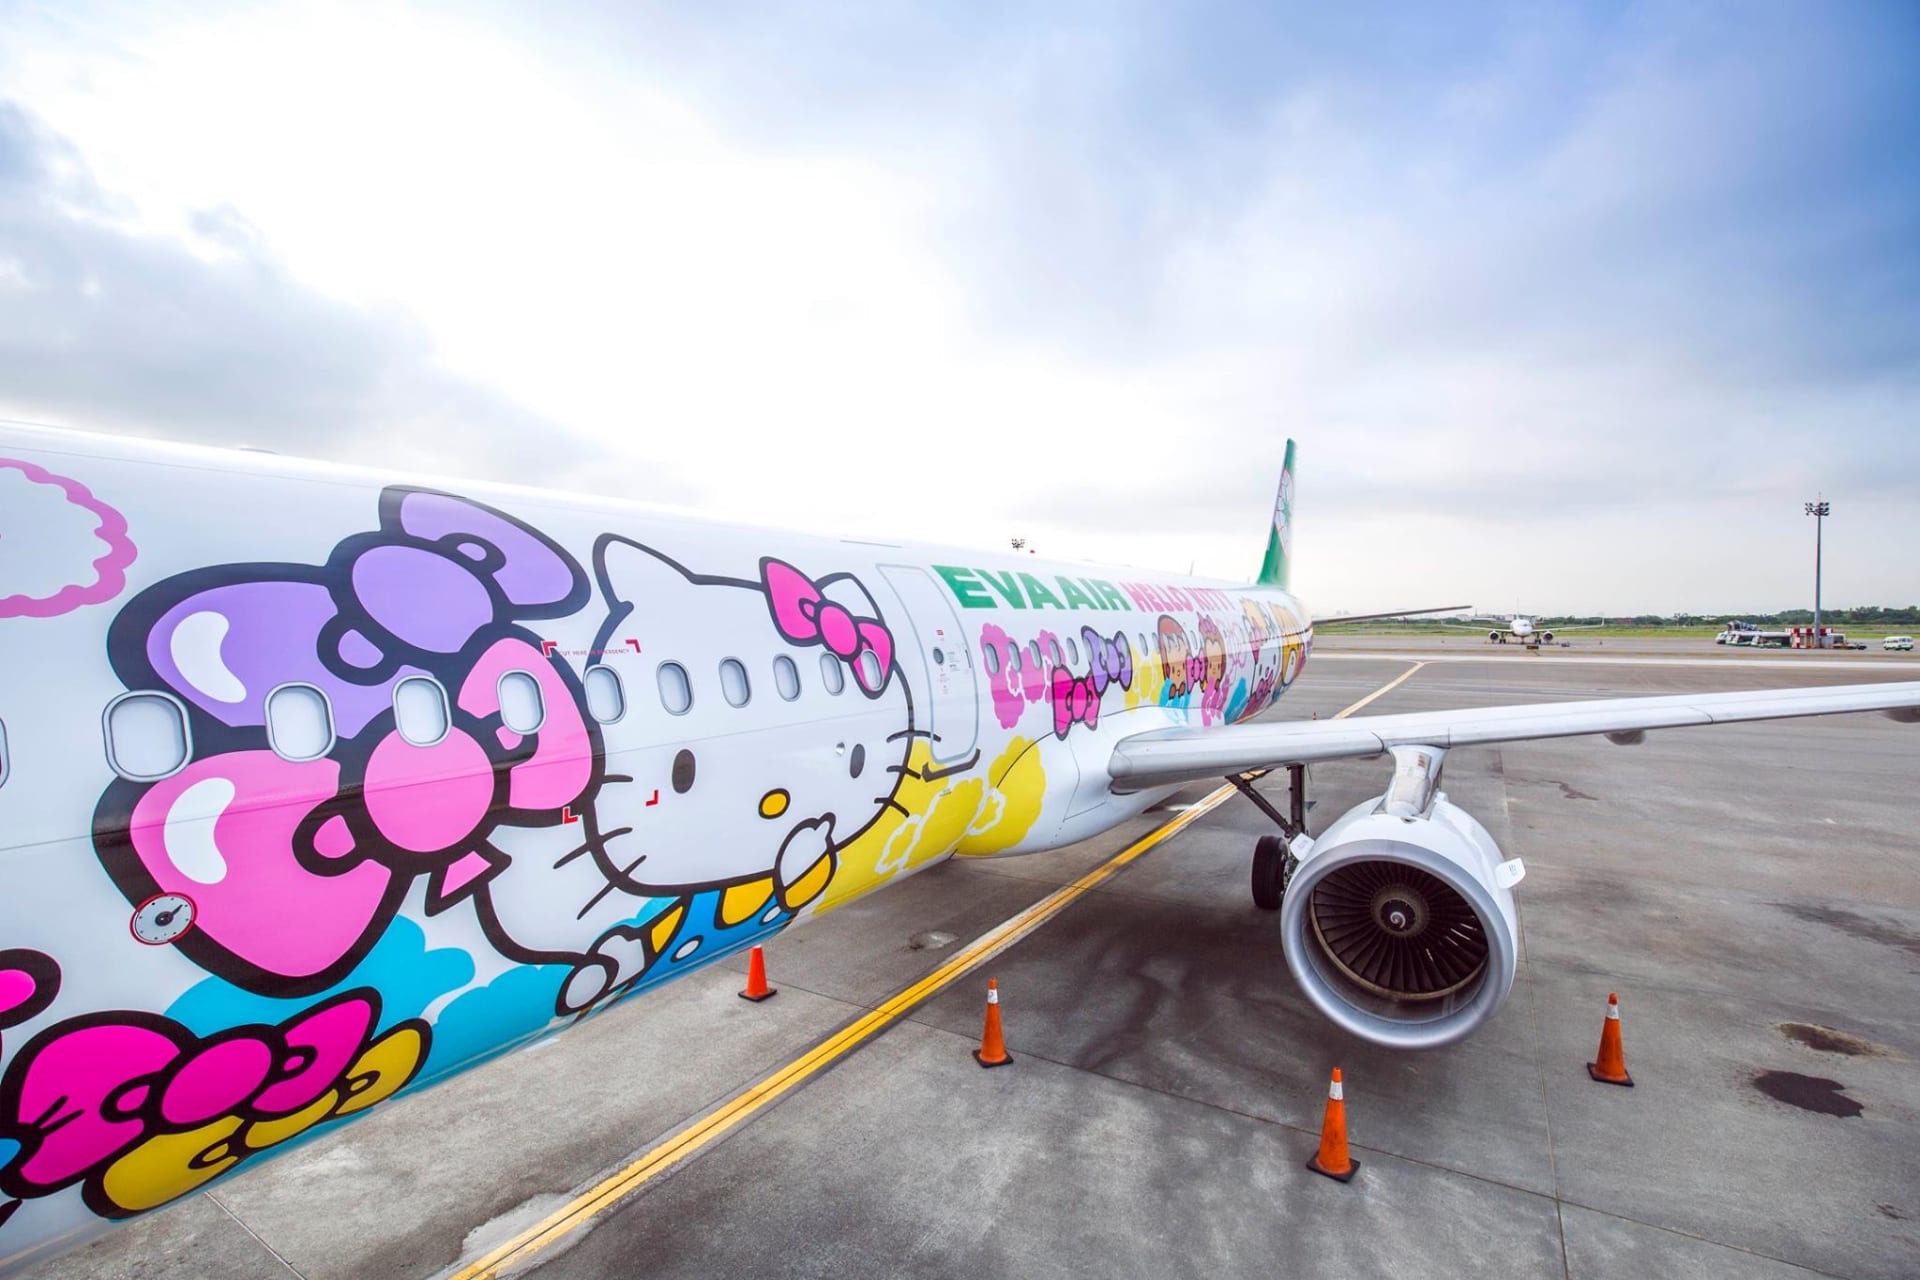 Tchajwanská soukromá letecká společnost EVA Air vytvořila letoun ve stylu Hello Kitty, kreslenou kočkou, která byla vytvořena japonskou designérkou Juko Šimizu.